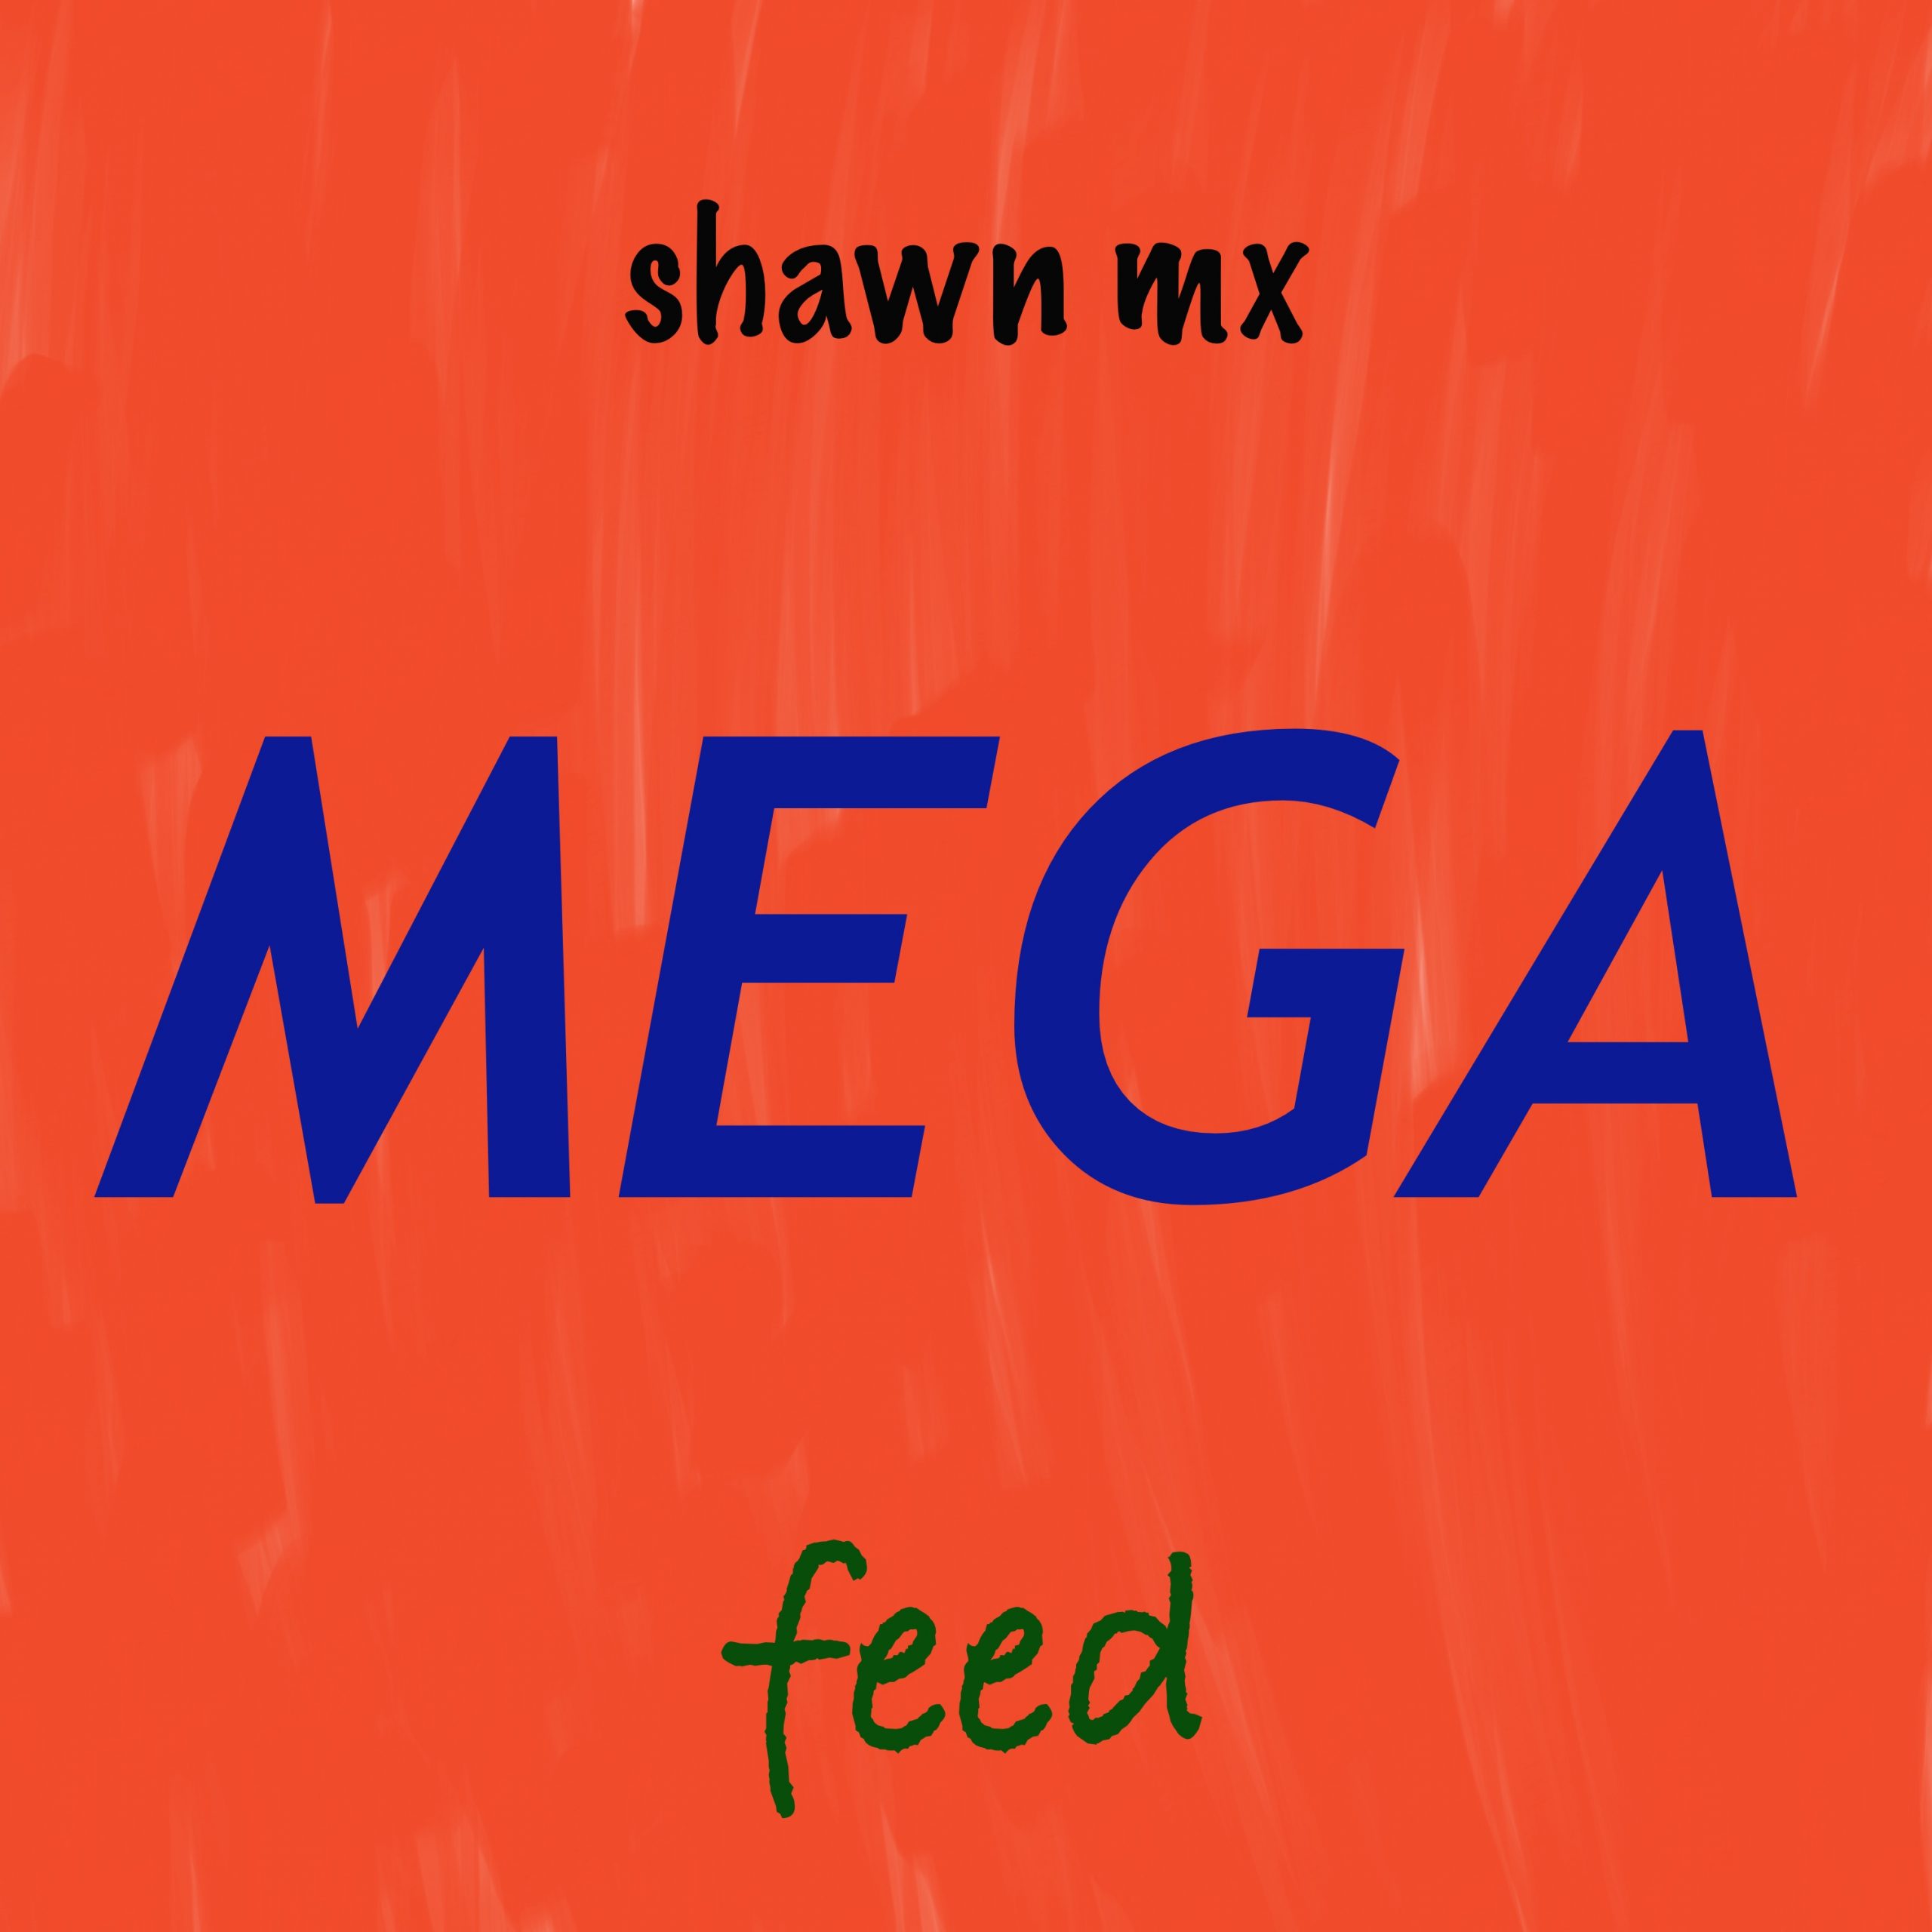 shawn mx MEGA feed